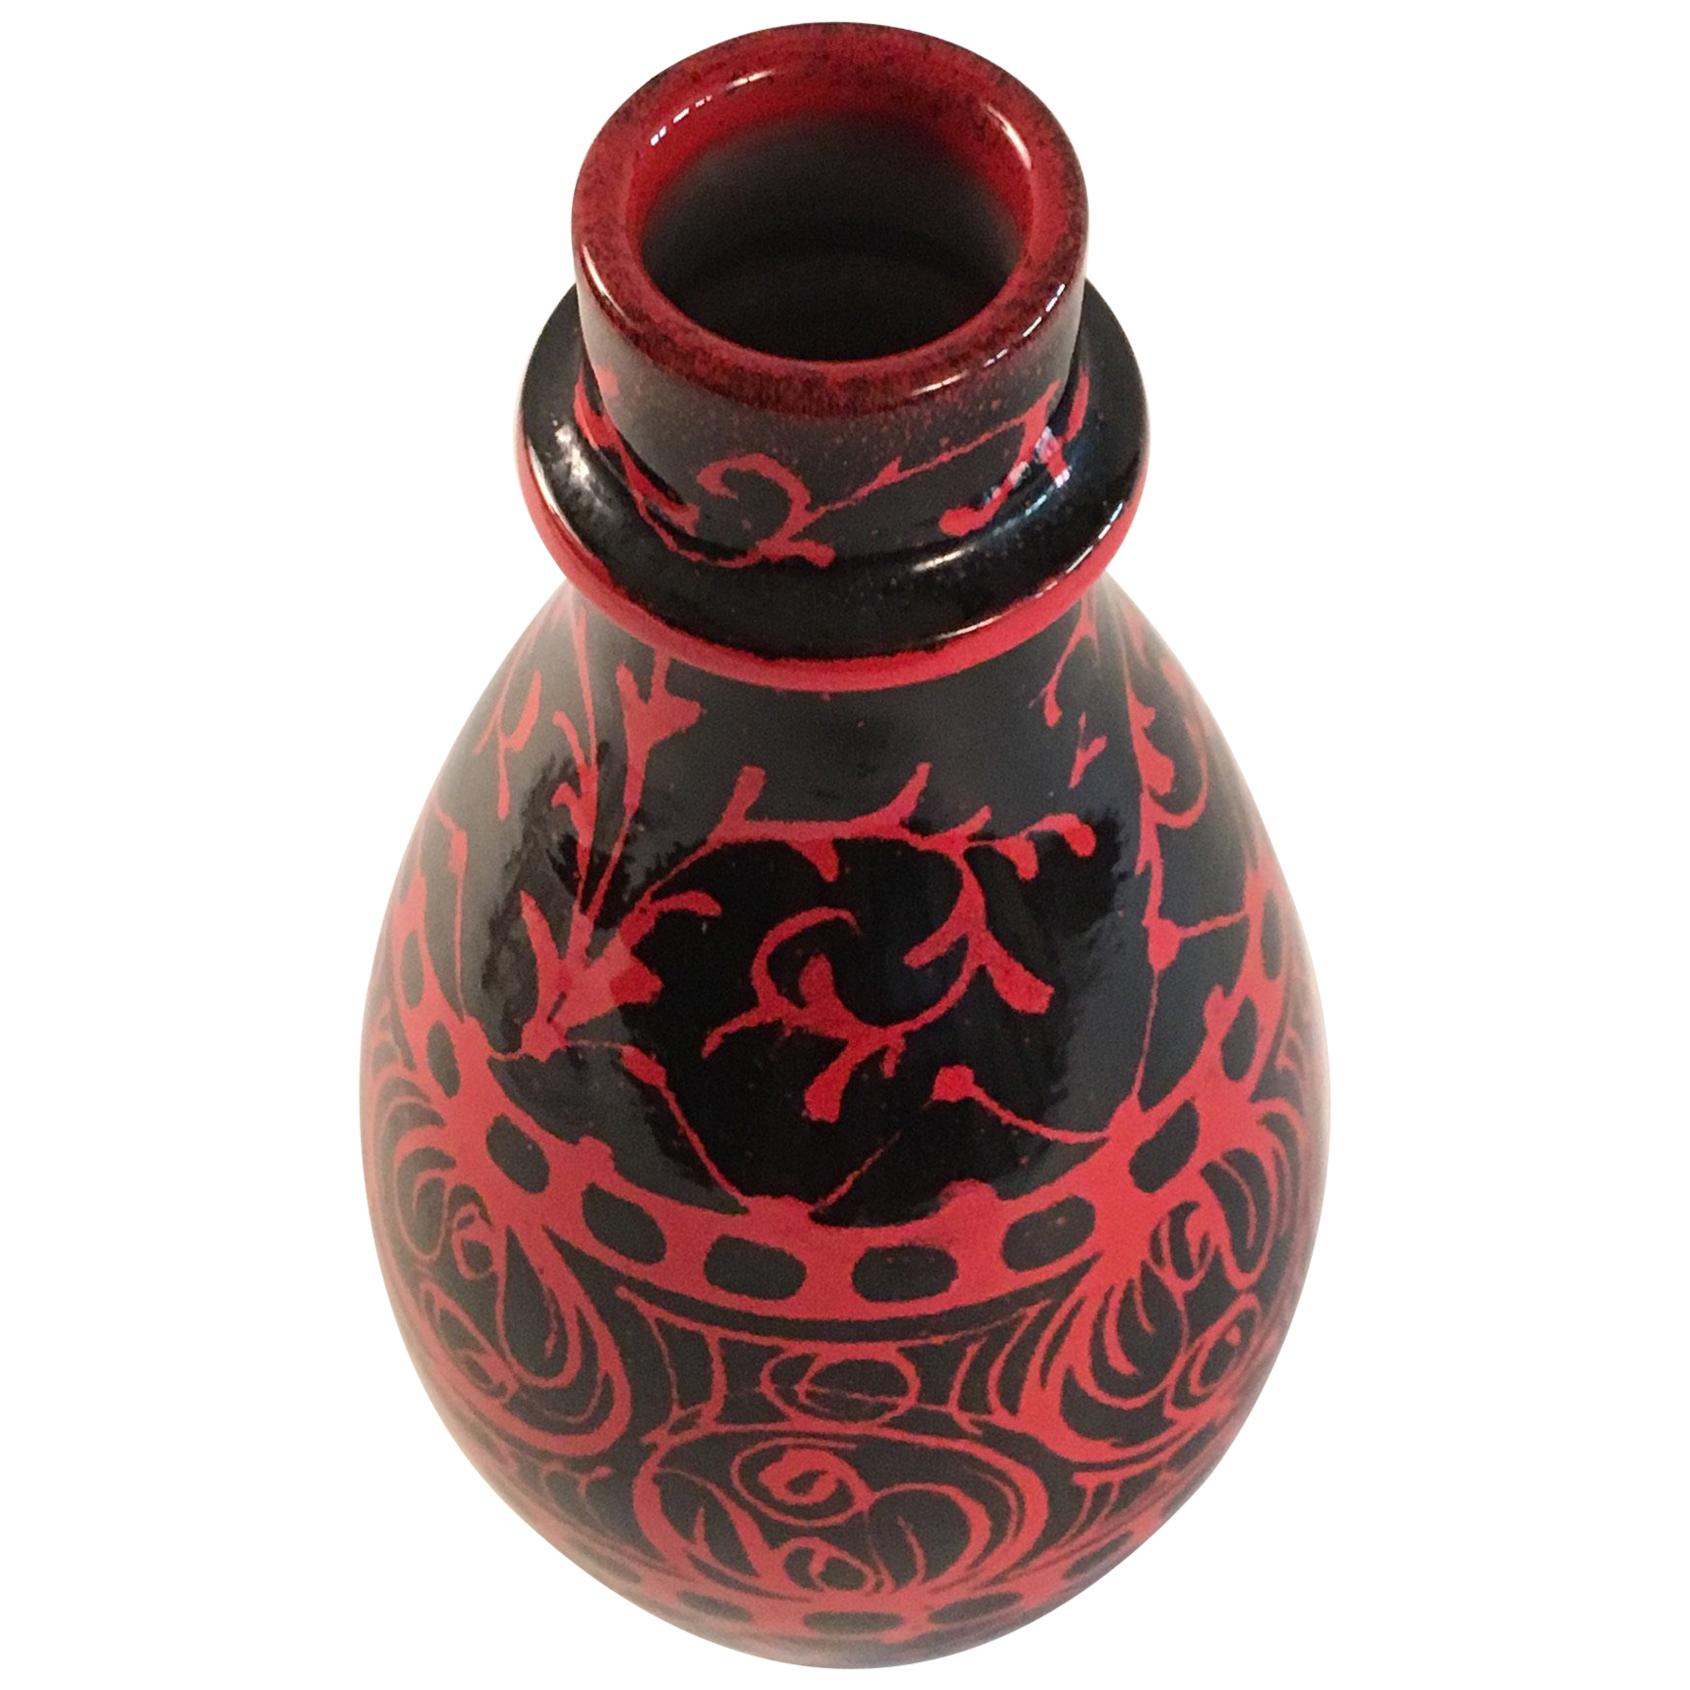 Bagni Ceramiche Red and Black Vase Alvino Bagni Italy, circa 1970